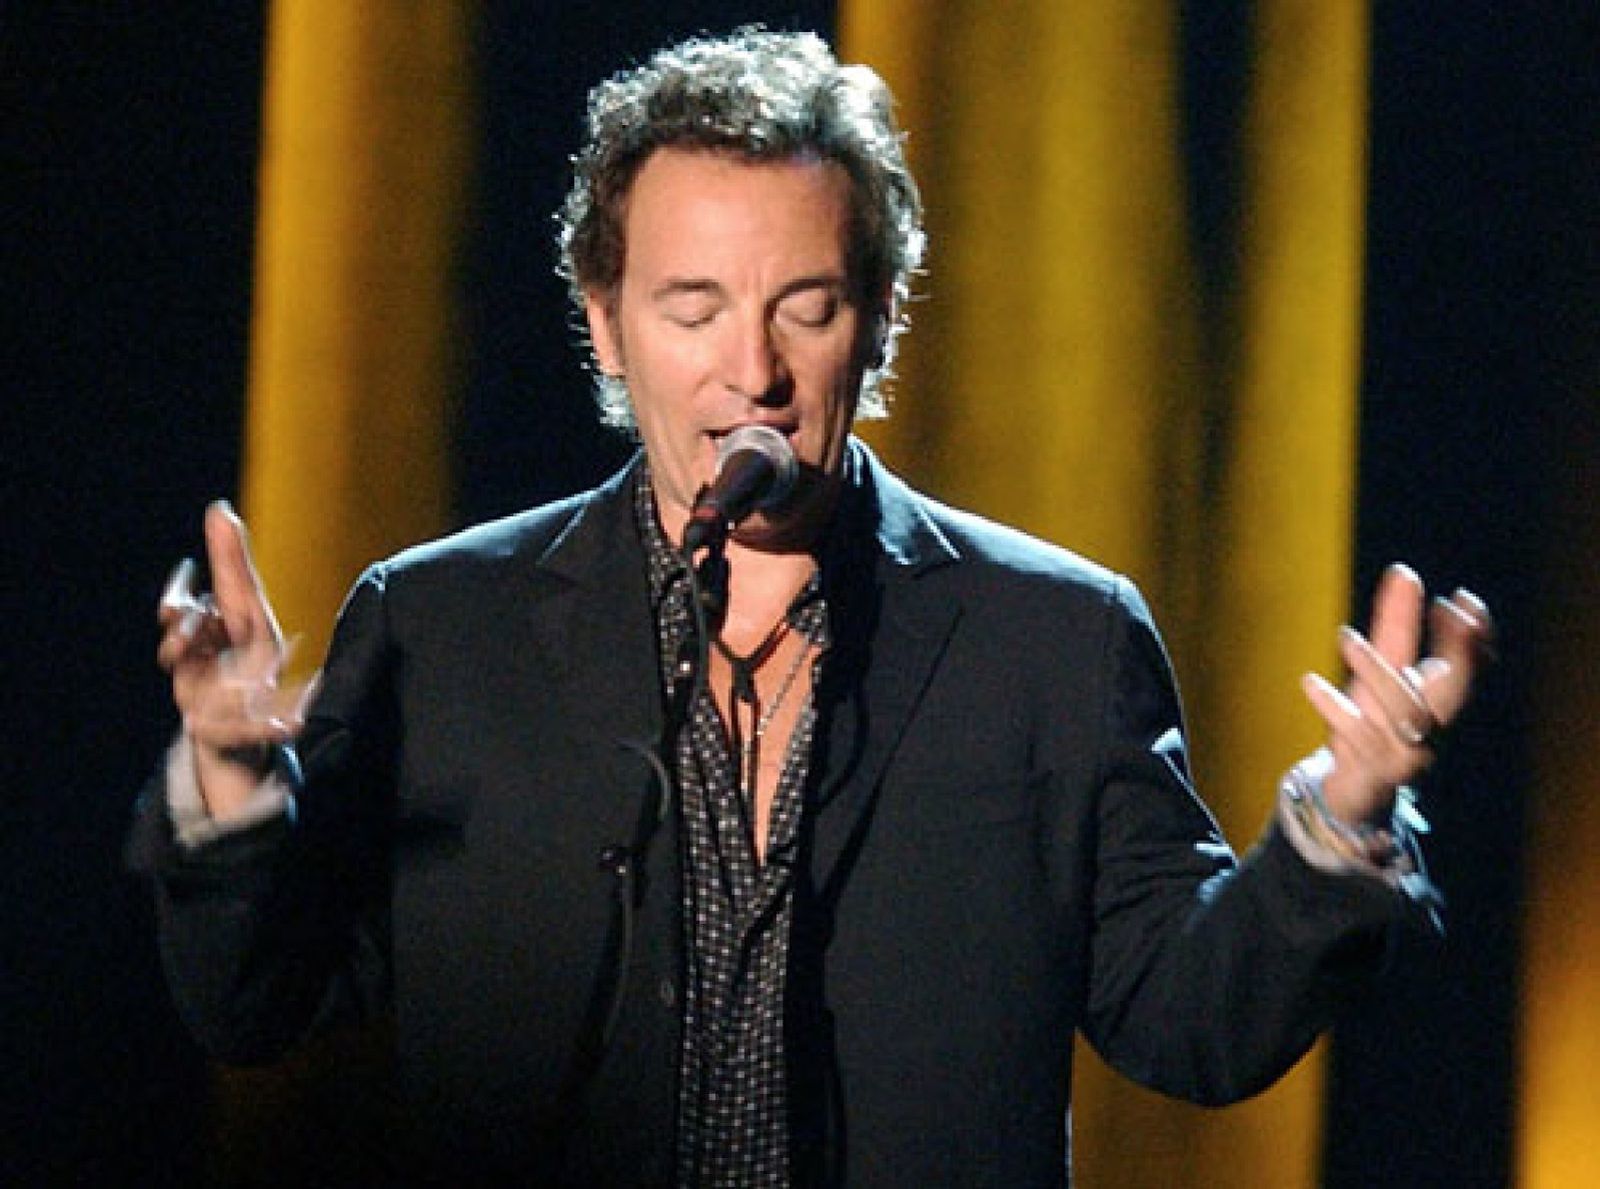 Foto: Más de 8.000 personas acudieron a ver a Bruce Springsteen en la presentación de su nuevo disco, 'Devils and dust'.